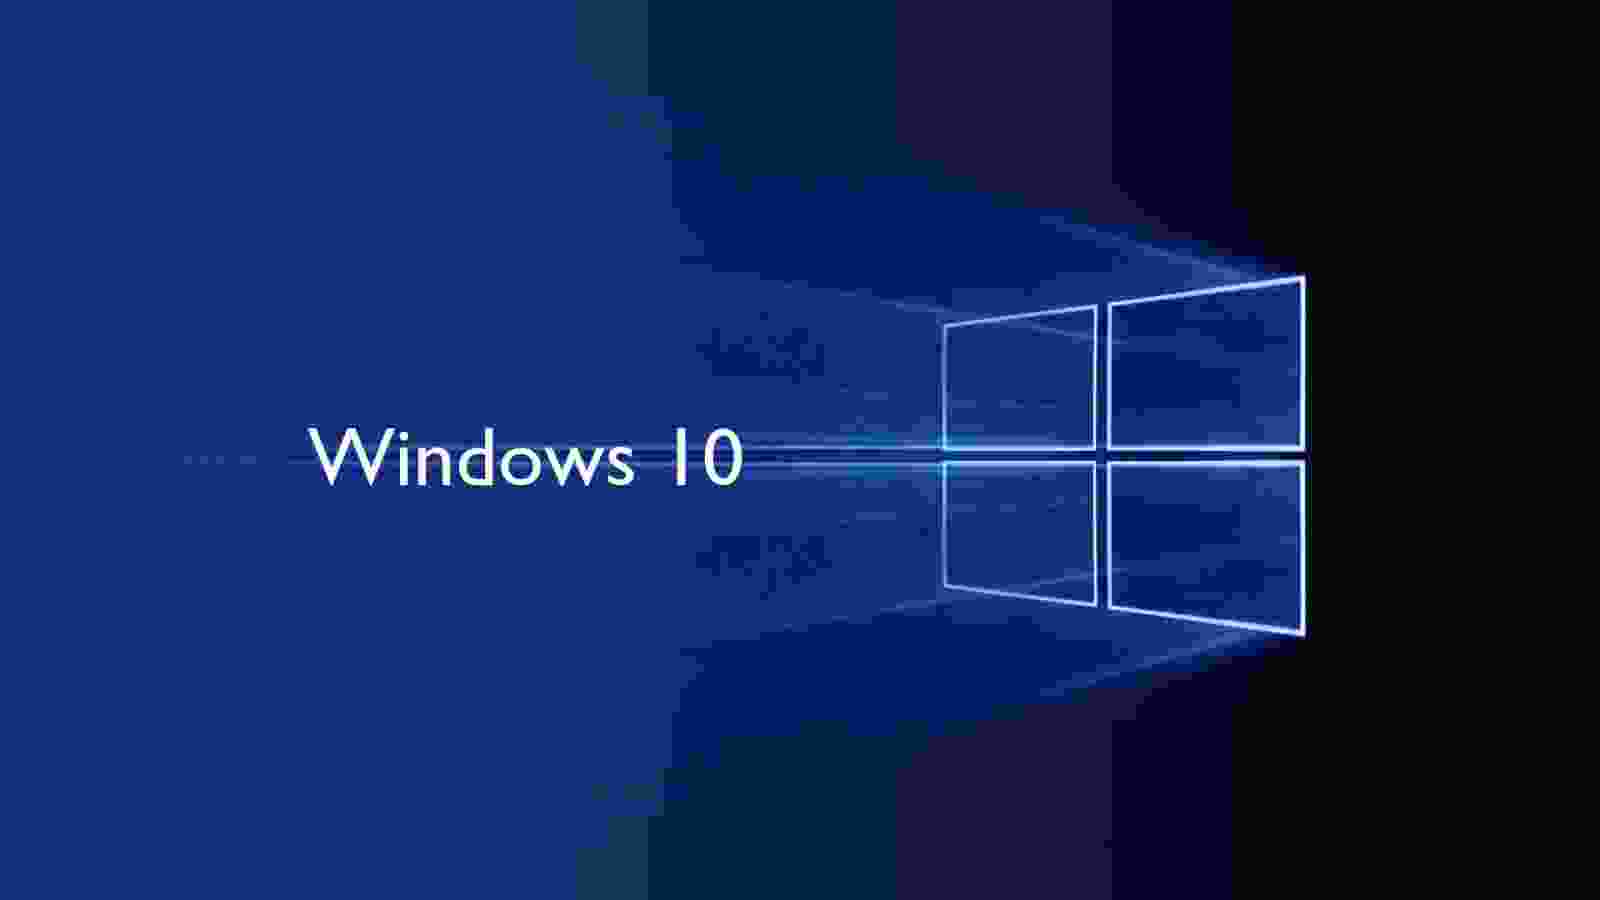 Windows 10: Hãy khám phá hệ điều hành mới nhất của Microsoft với hình ảnh đẹp mắt và tính năng nổi bật. Windows 10 sẽ mang đến cho bạn trải nghiệm sử dụng máy tính tuyệt vời hơn bao giờ hết!